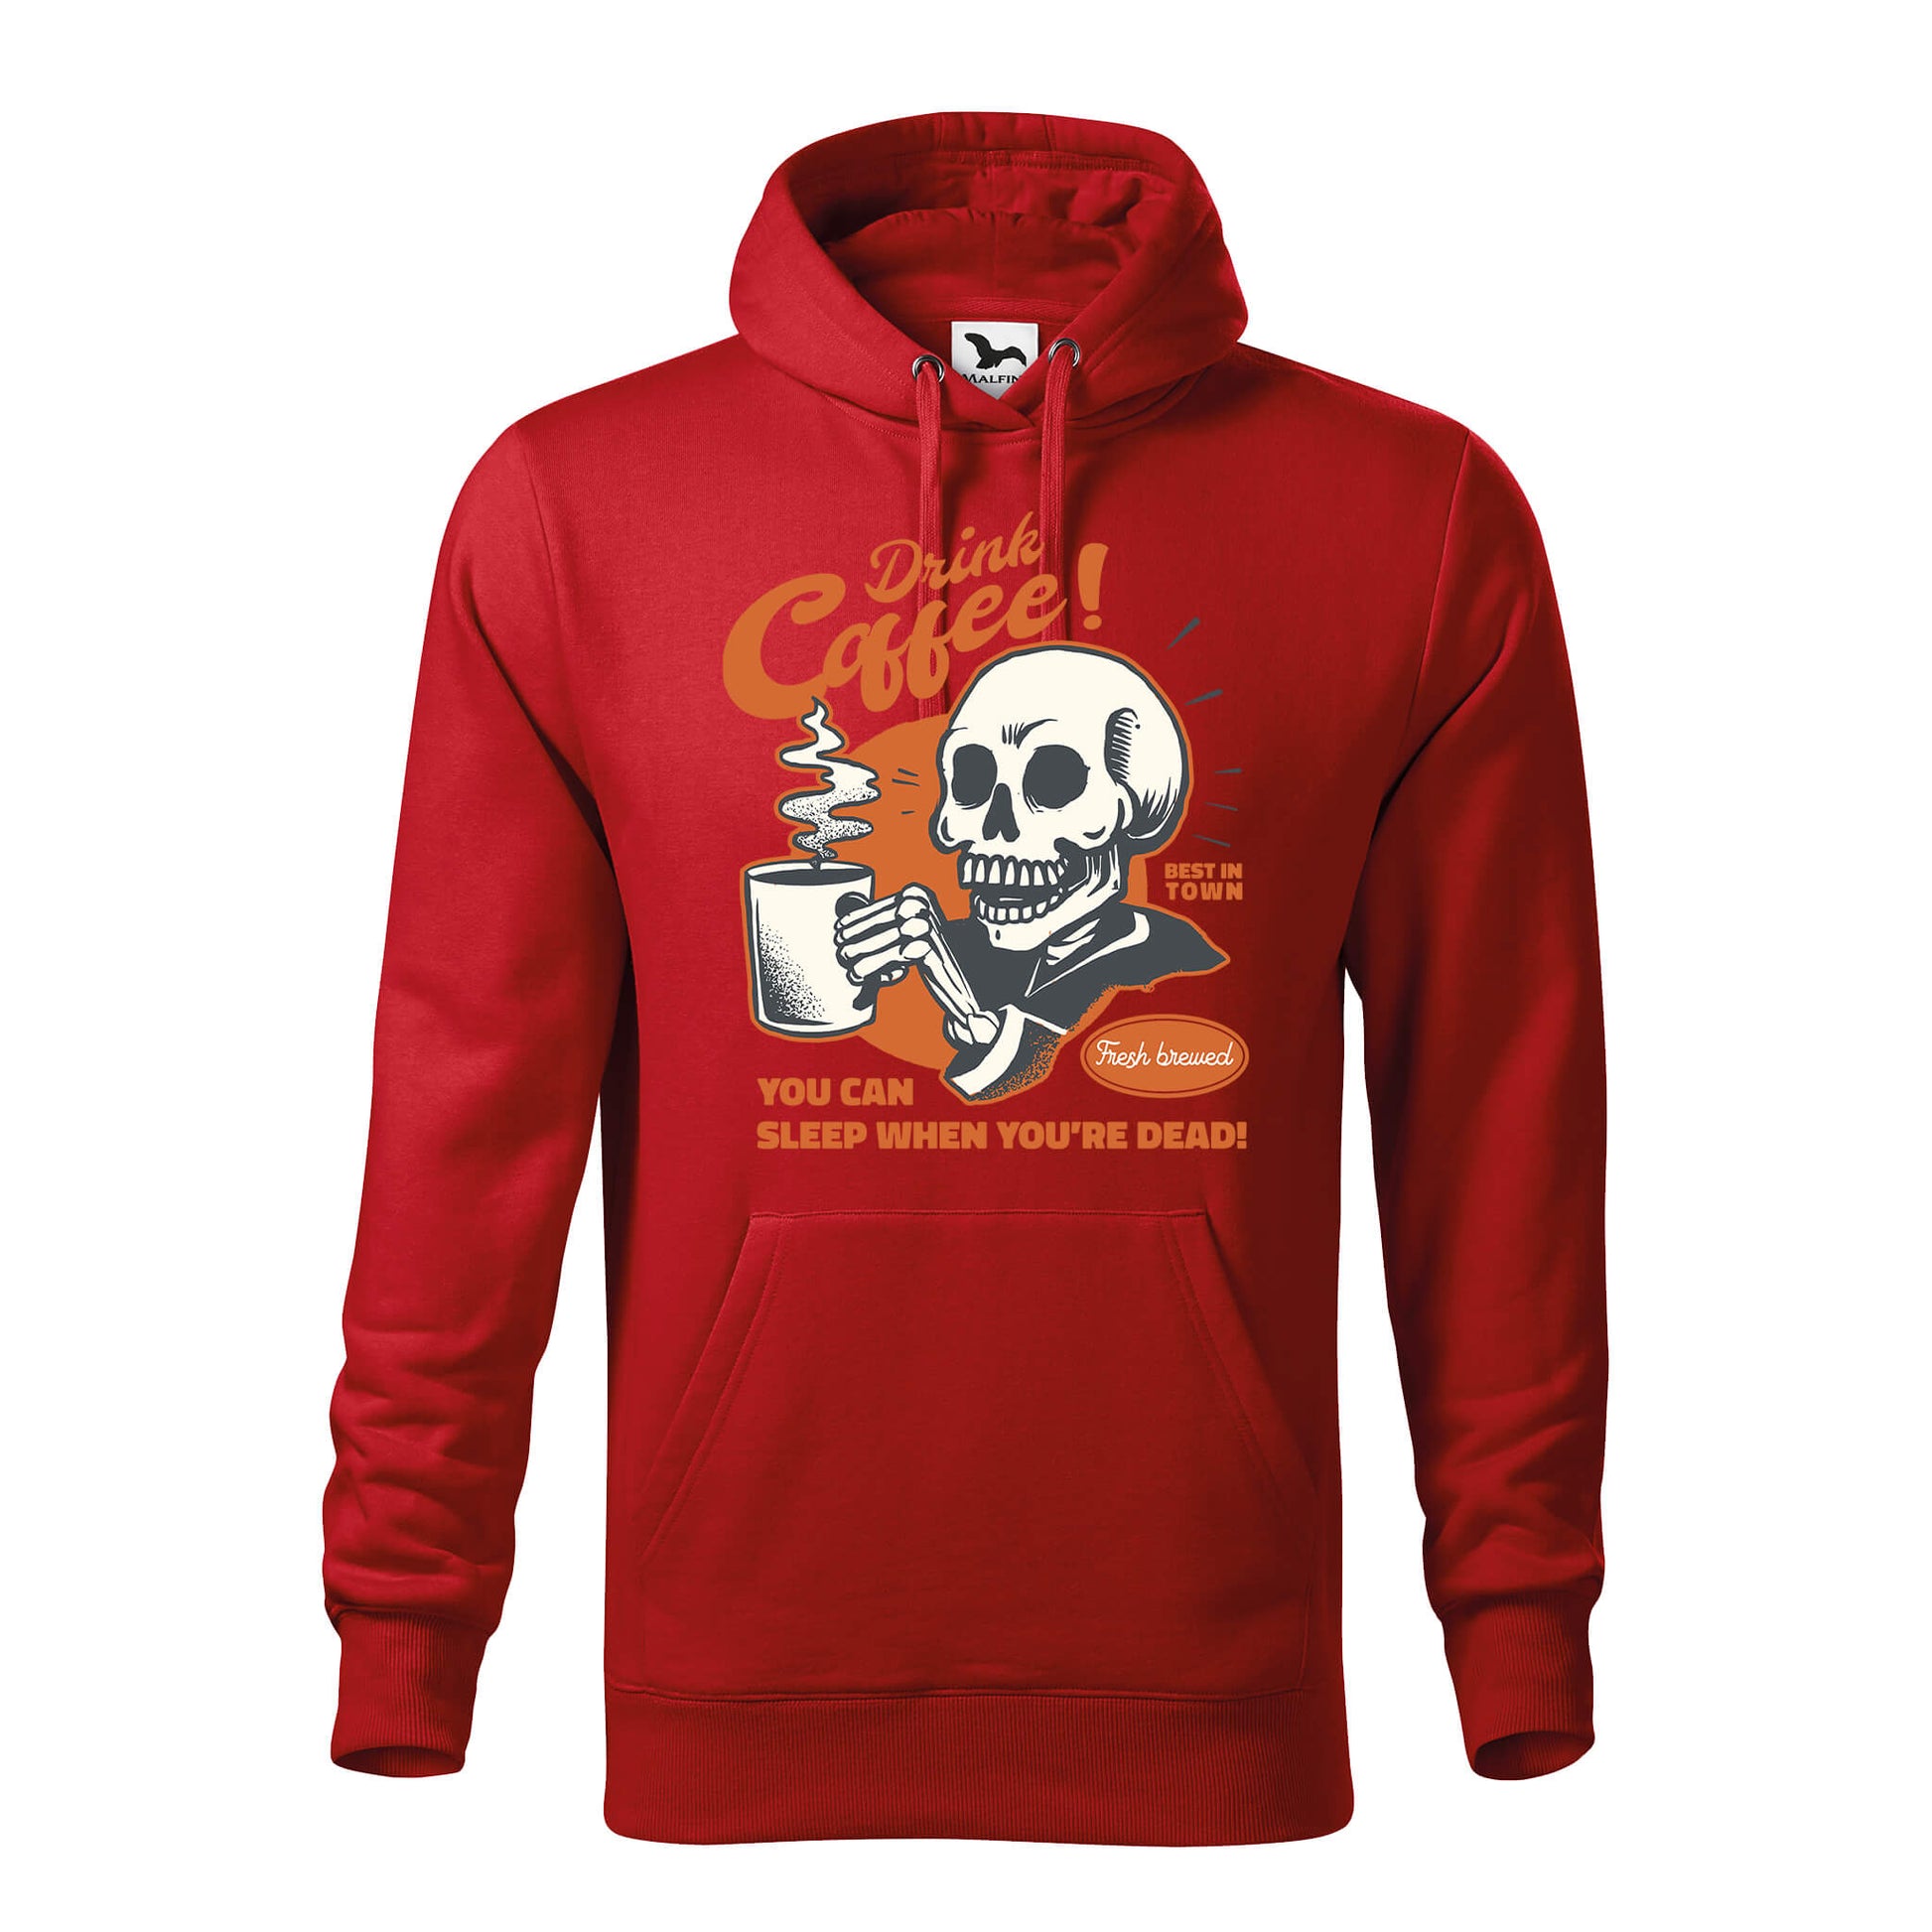 Drink coffee hoodie - rvdesignprint